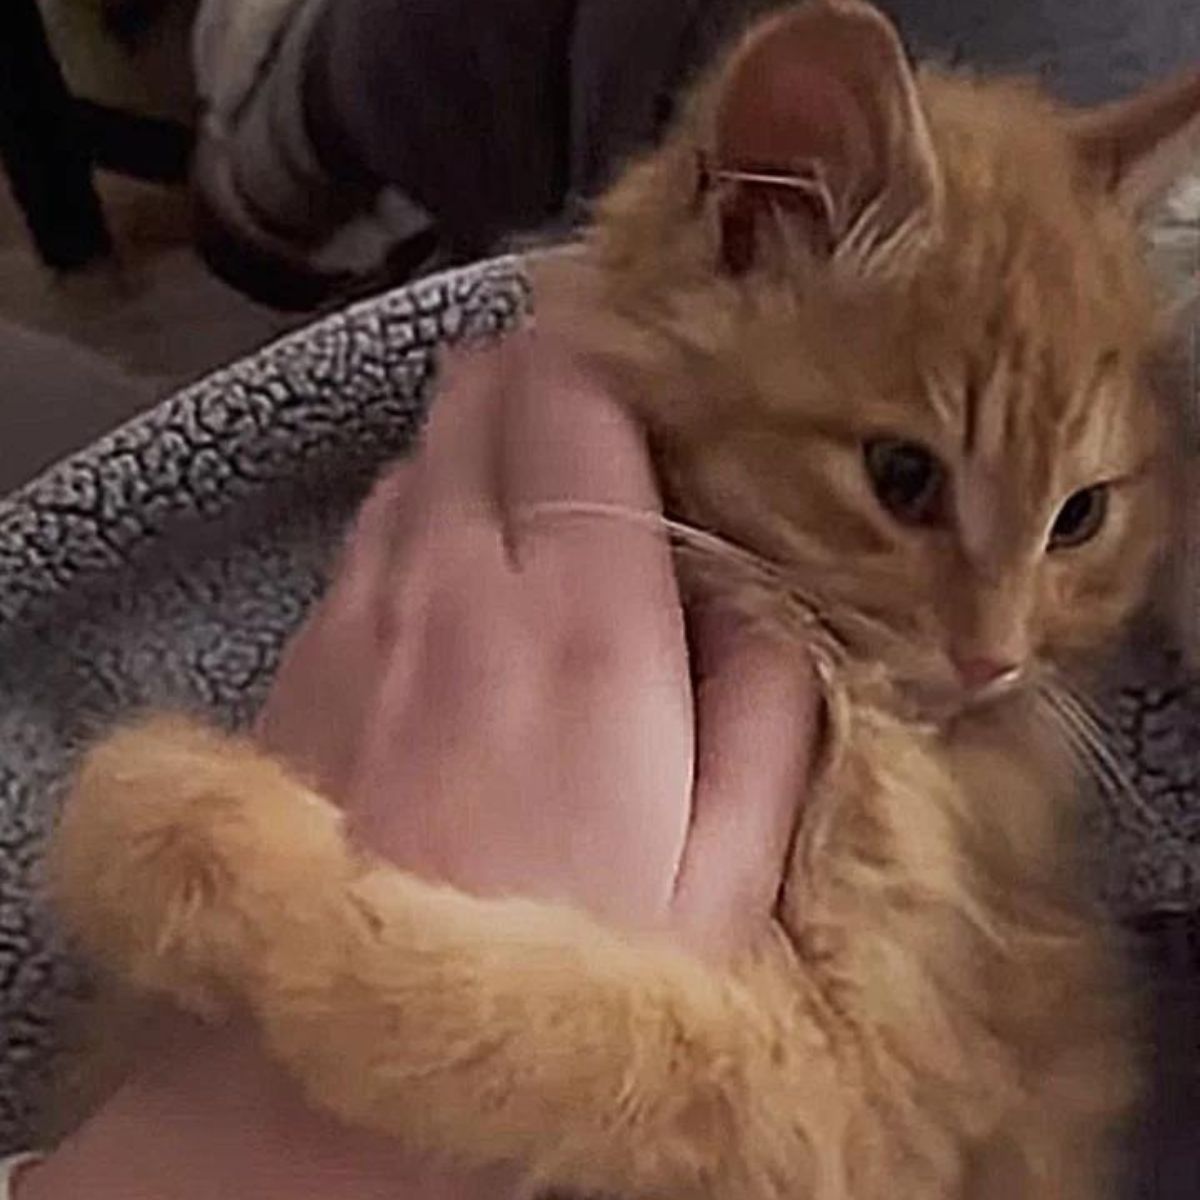 photo of hand petting the kitten